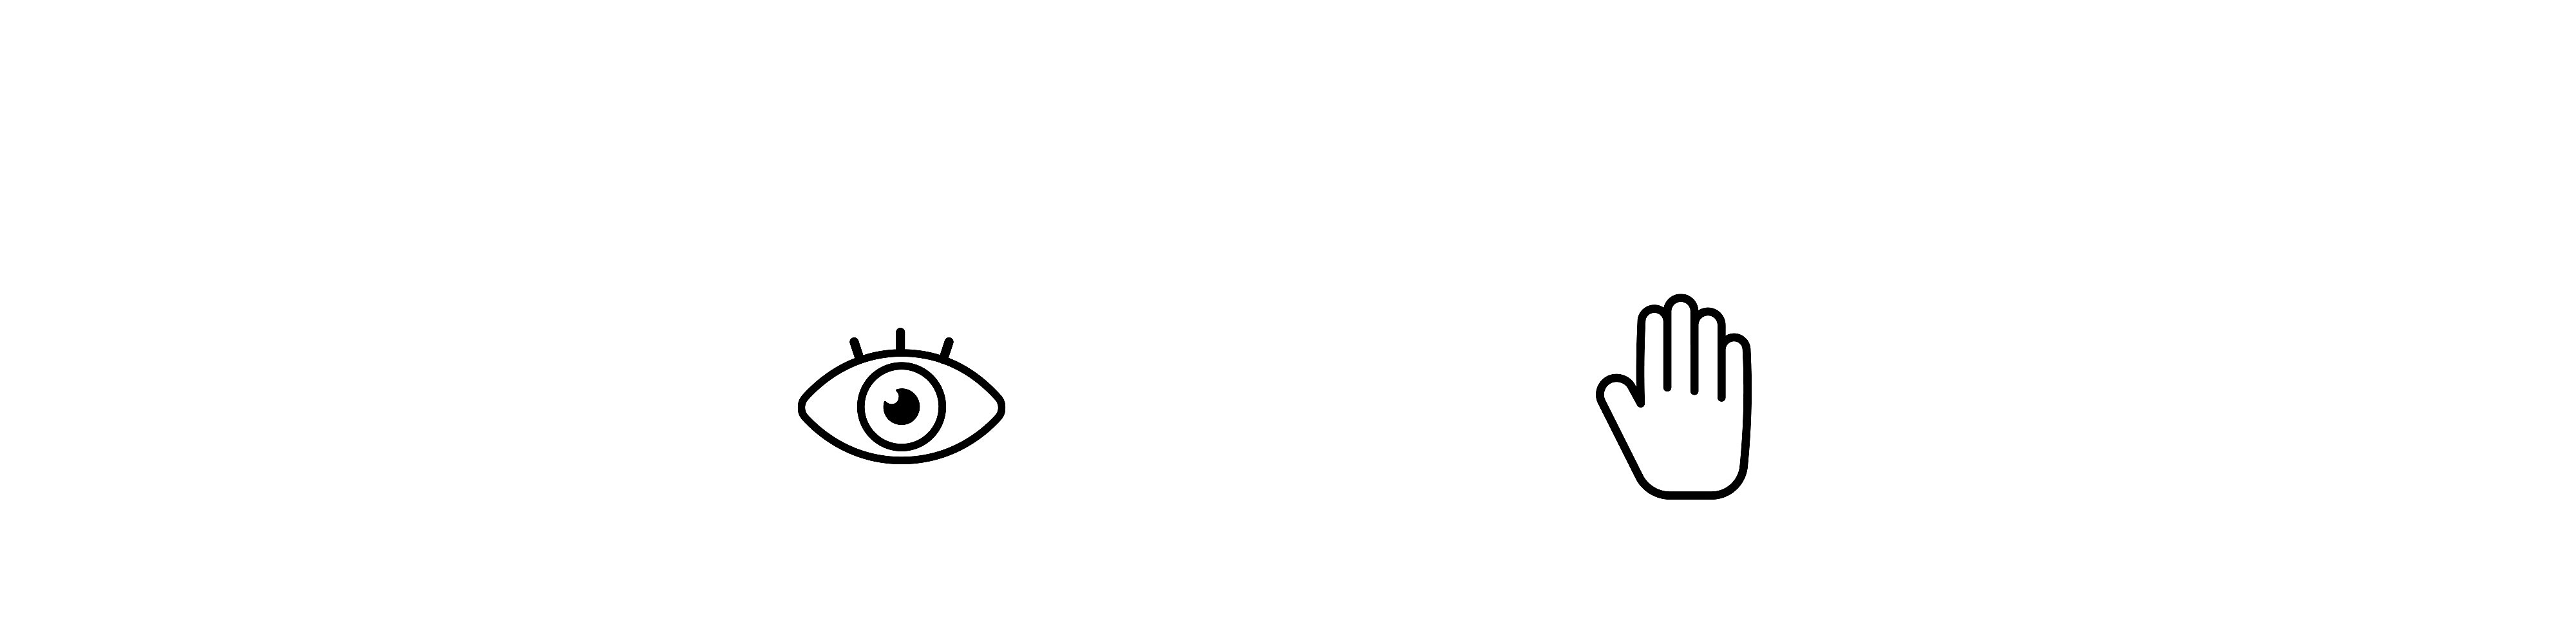 Две иконки една до друга – отляво око, а отдясно ръка